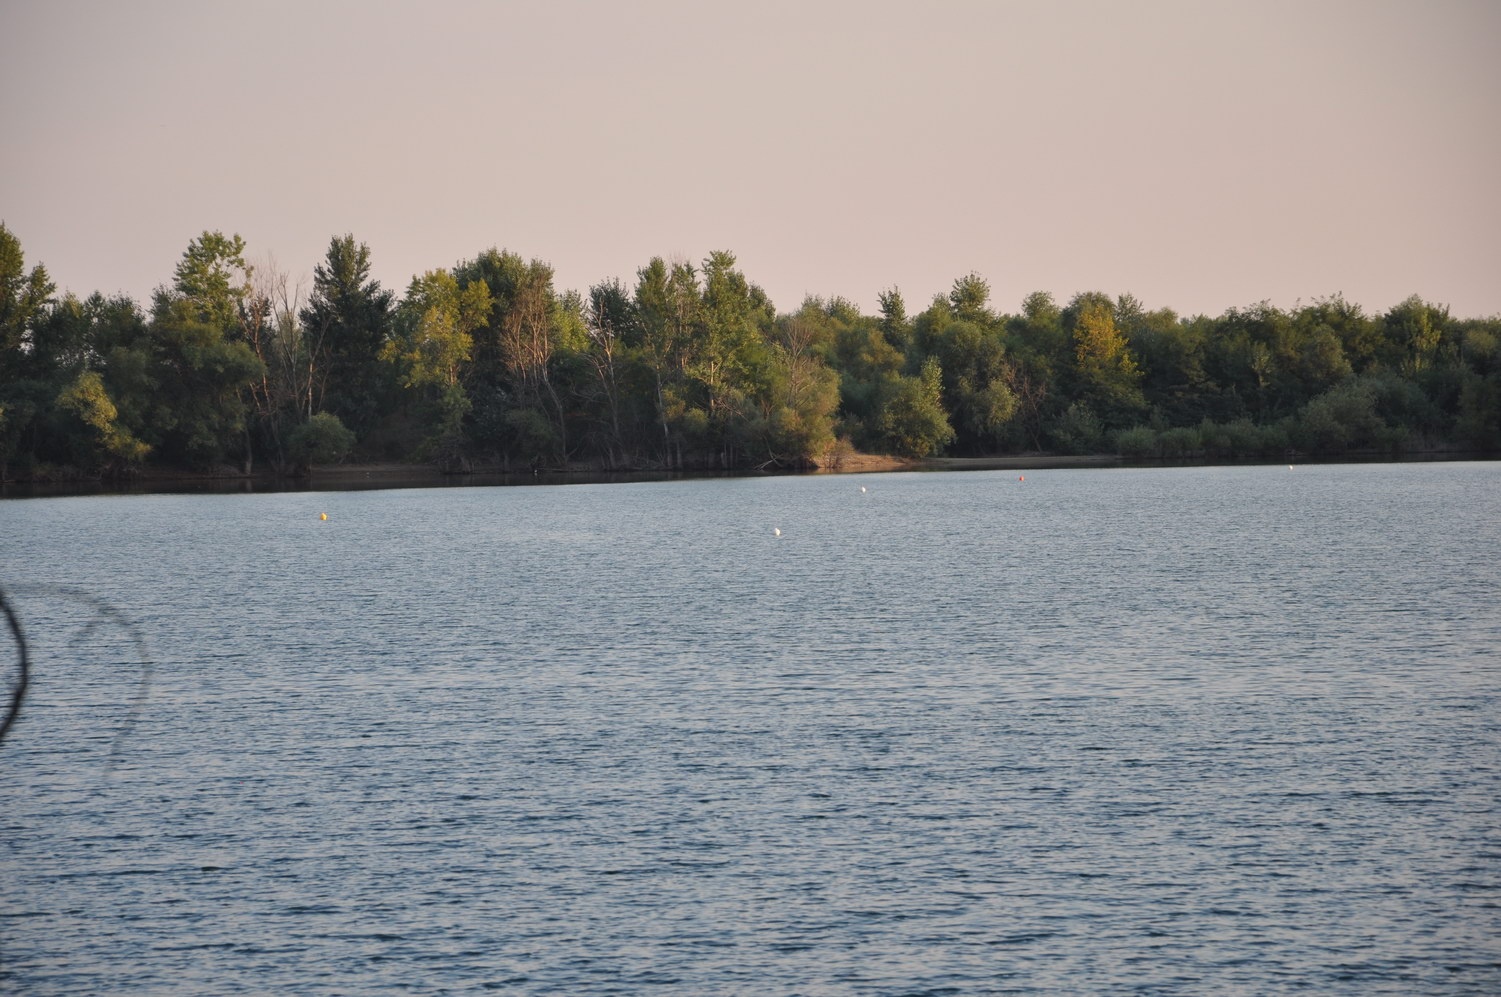 Ónod II. tó